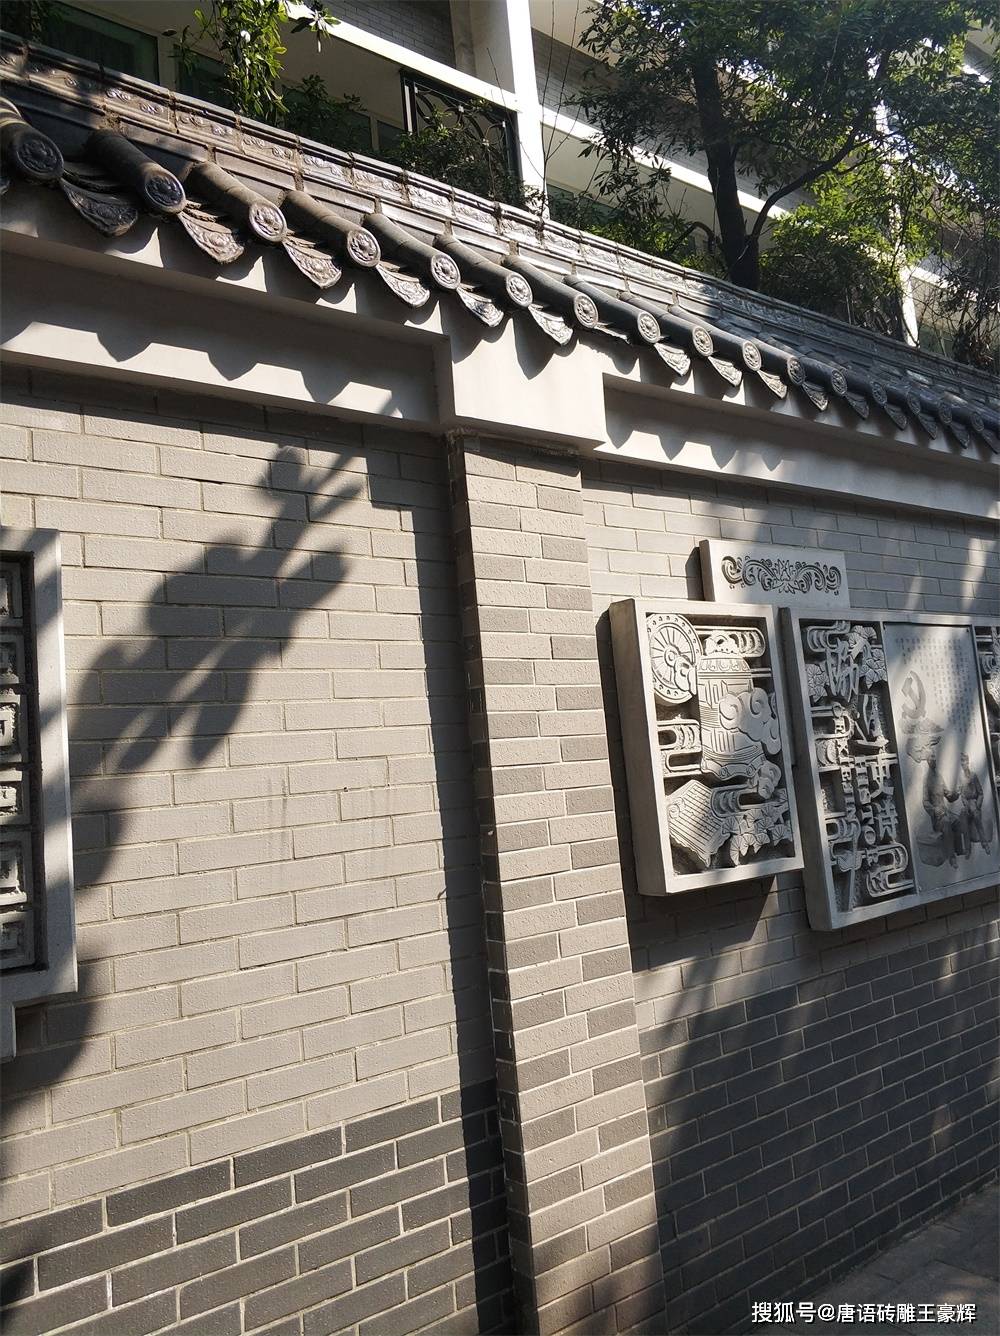 唯美的中国风仿古建筑,围墙配砖雕,让您品味中式的美